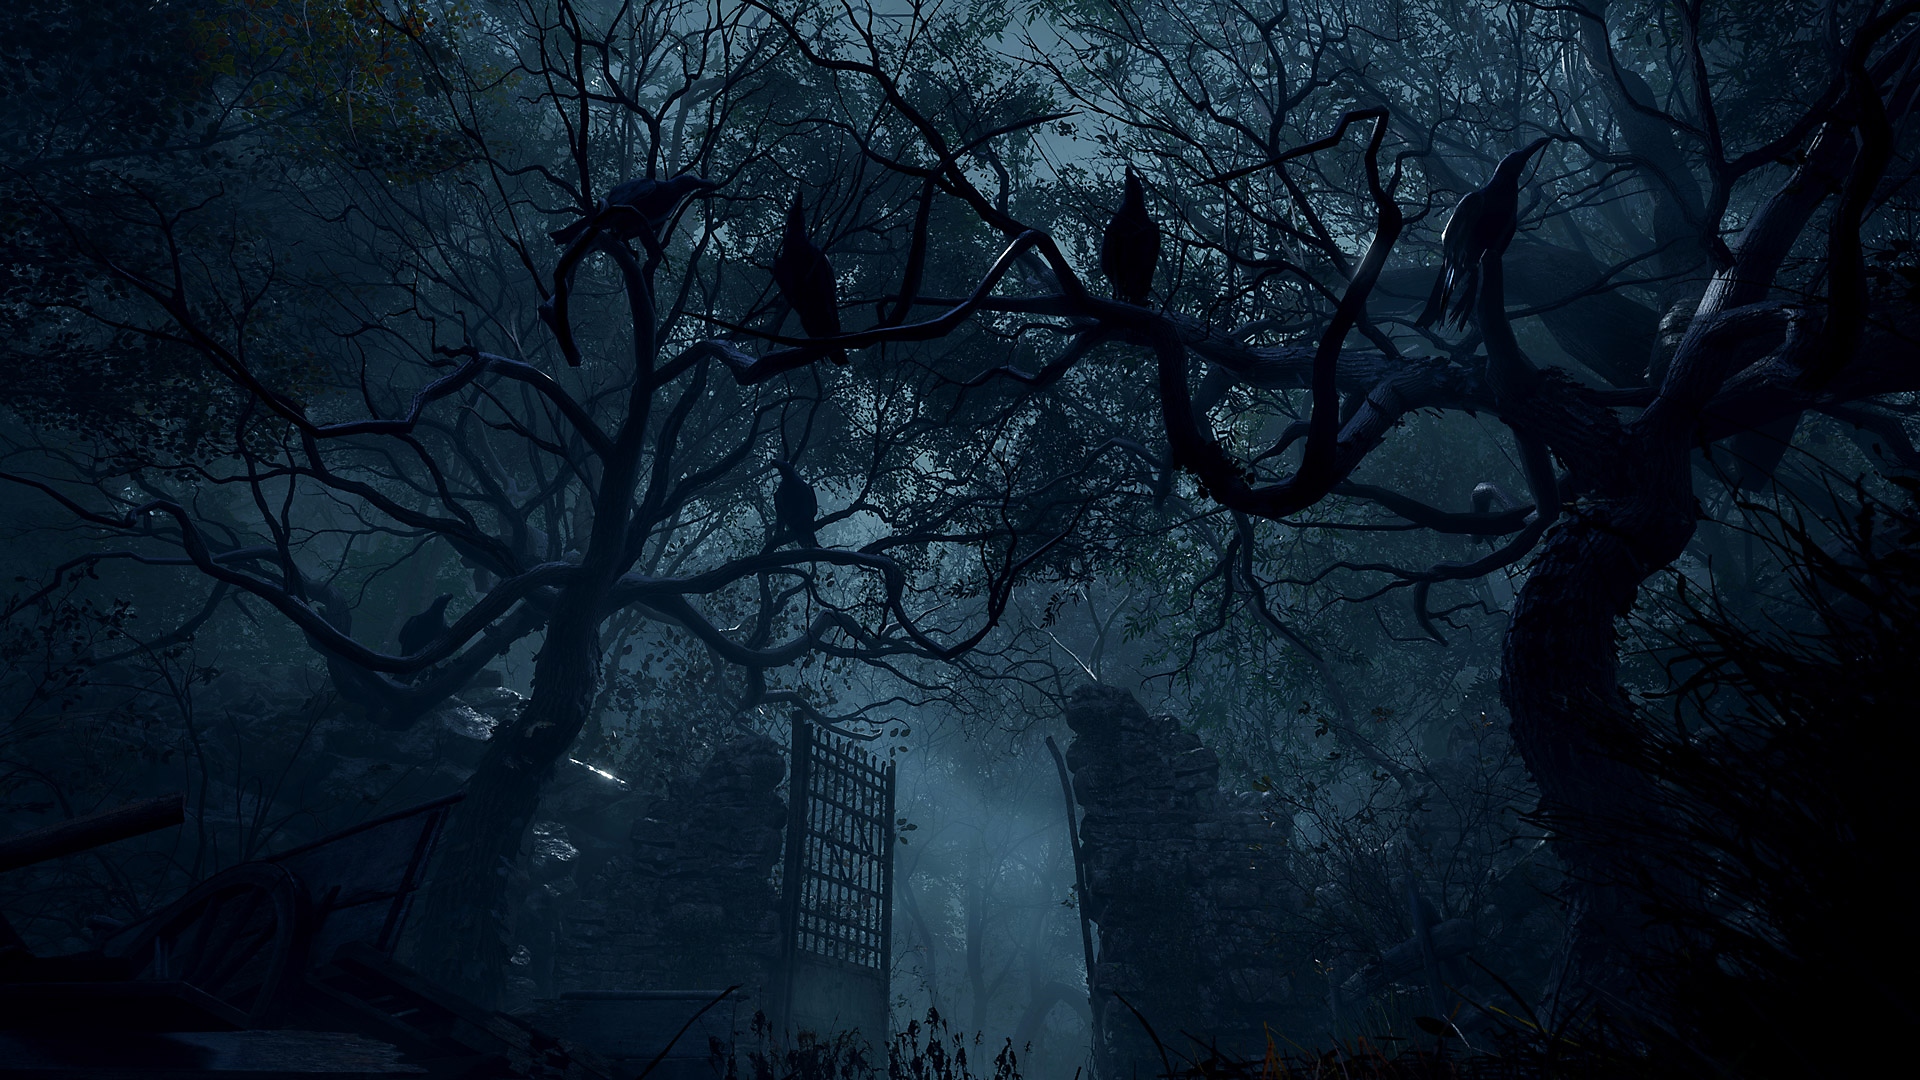 Captura de pantalla de Resident Evil 4 que muestra unas puertas de piedra altas en una zona muy boscosa.